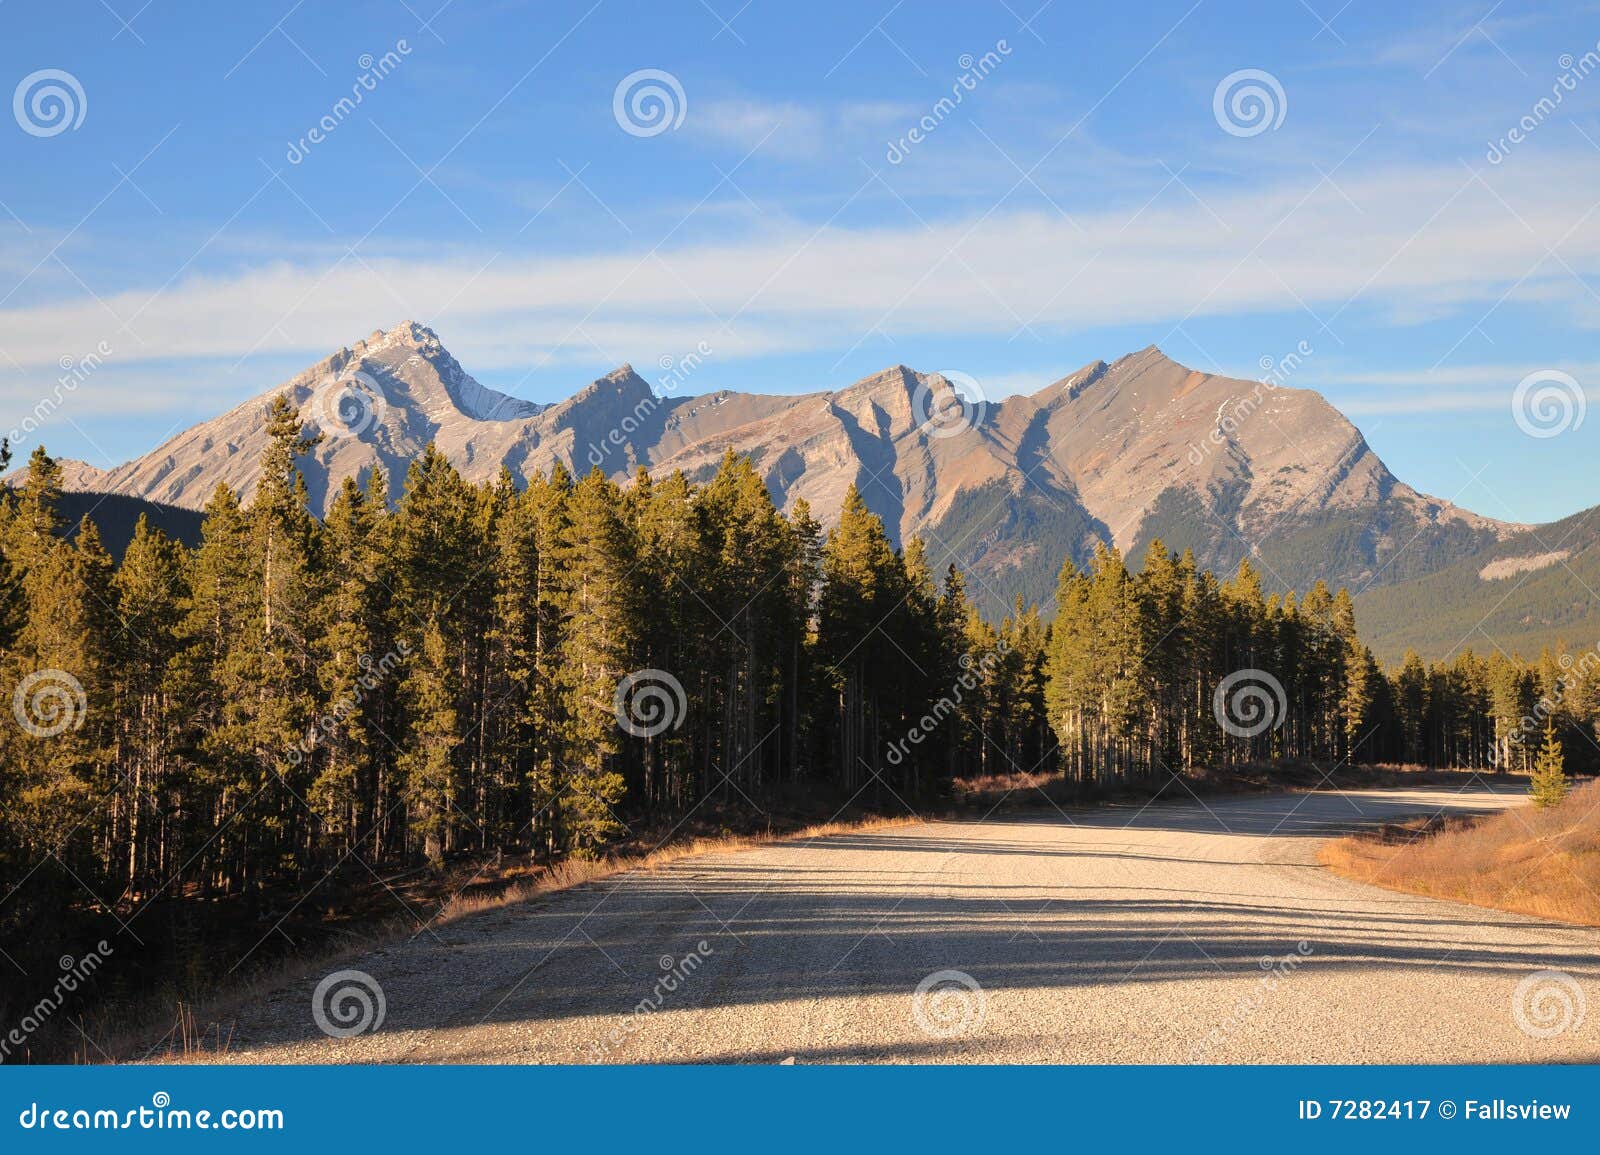 Scenic drive in rocky mountains, alberta, canada.